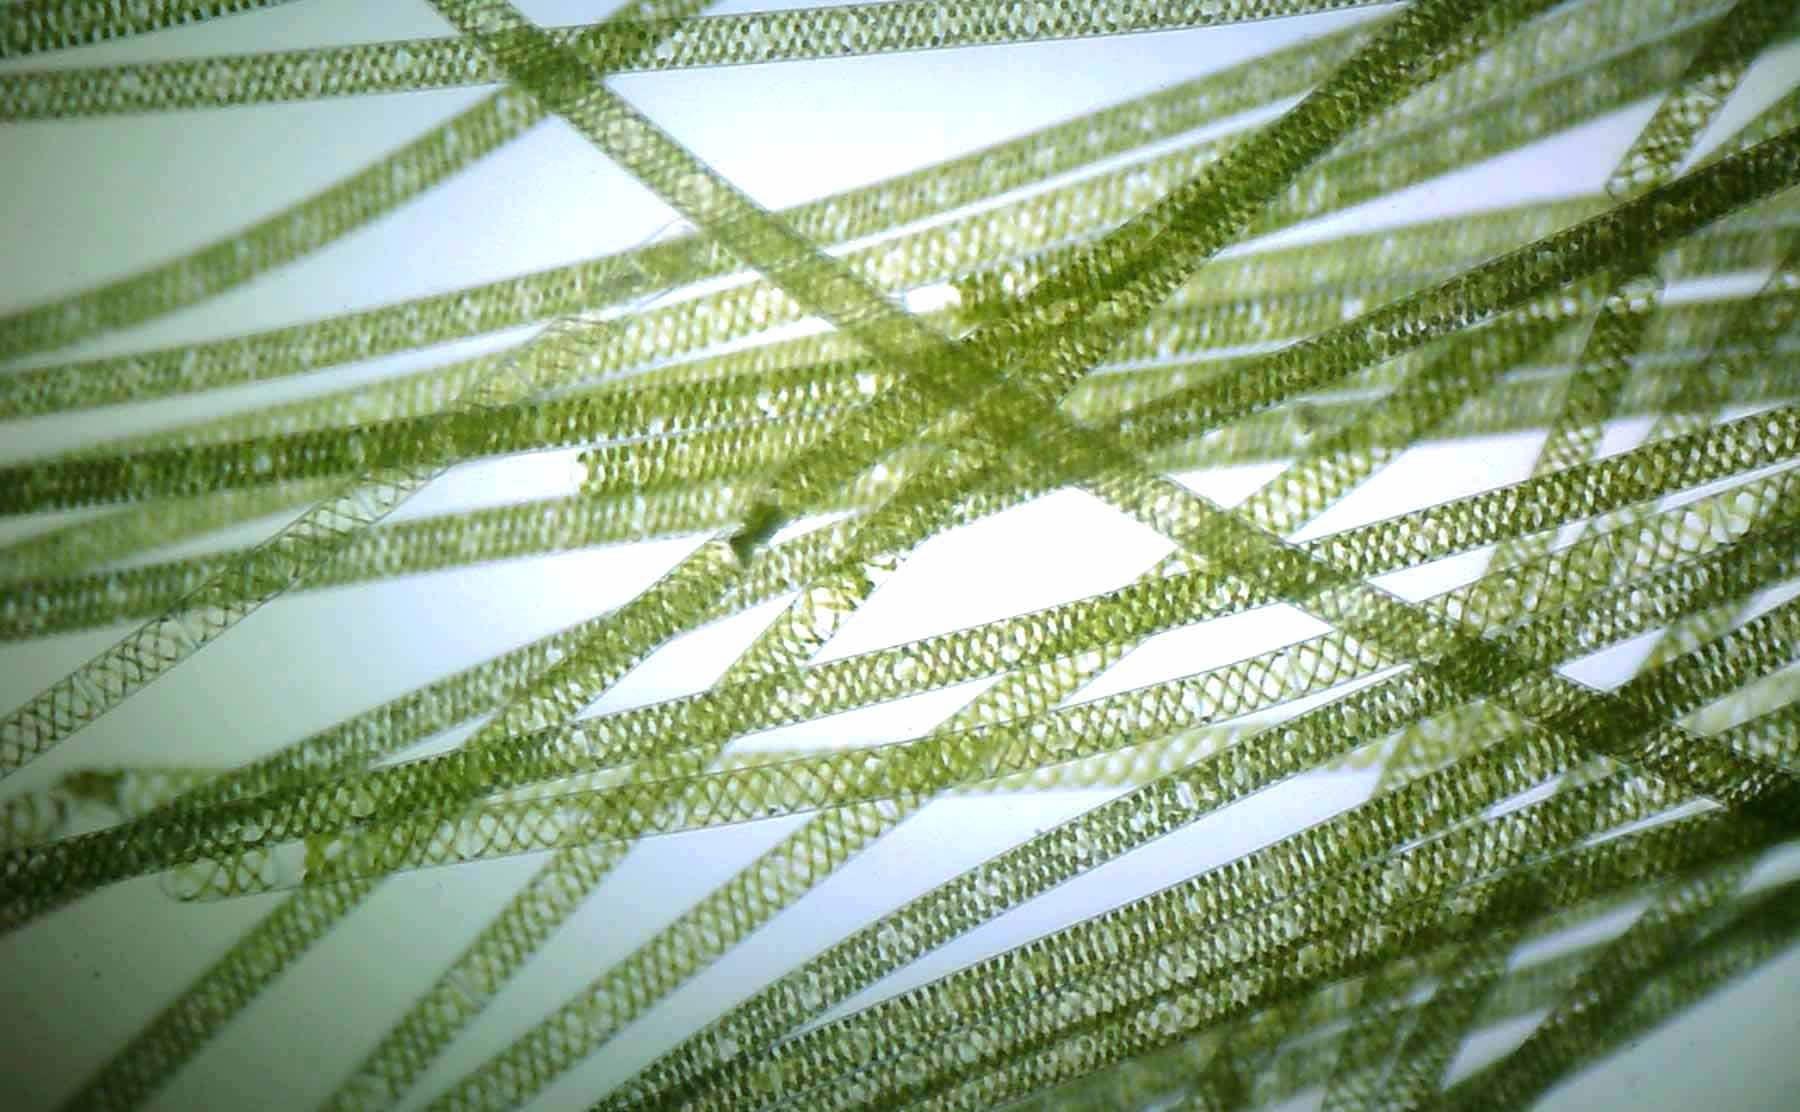 Лабораторная водоросли. Нитчатая водоросль спирогира. Многоклеточная нитчатая зелёная водоросль спирогира. Водоросль спирогира под микроскопом. Многоклеточные зеленые водоросли спирогира.